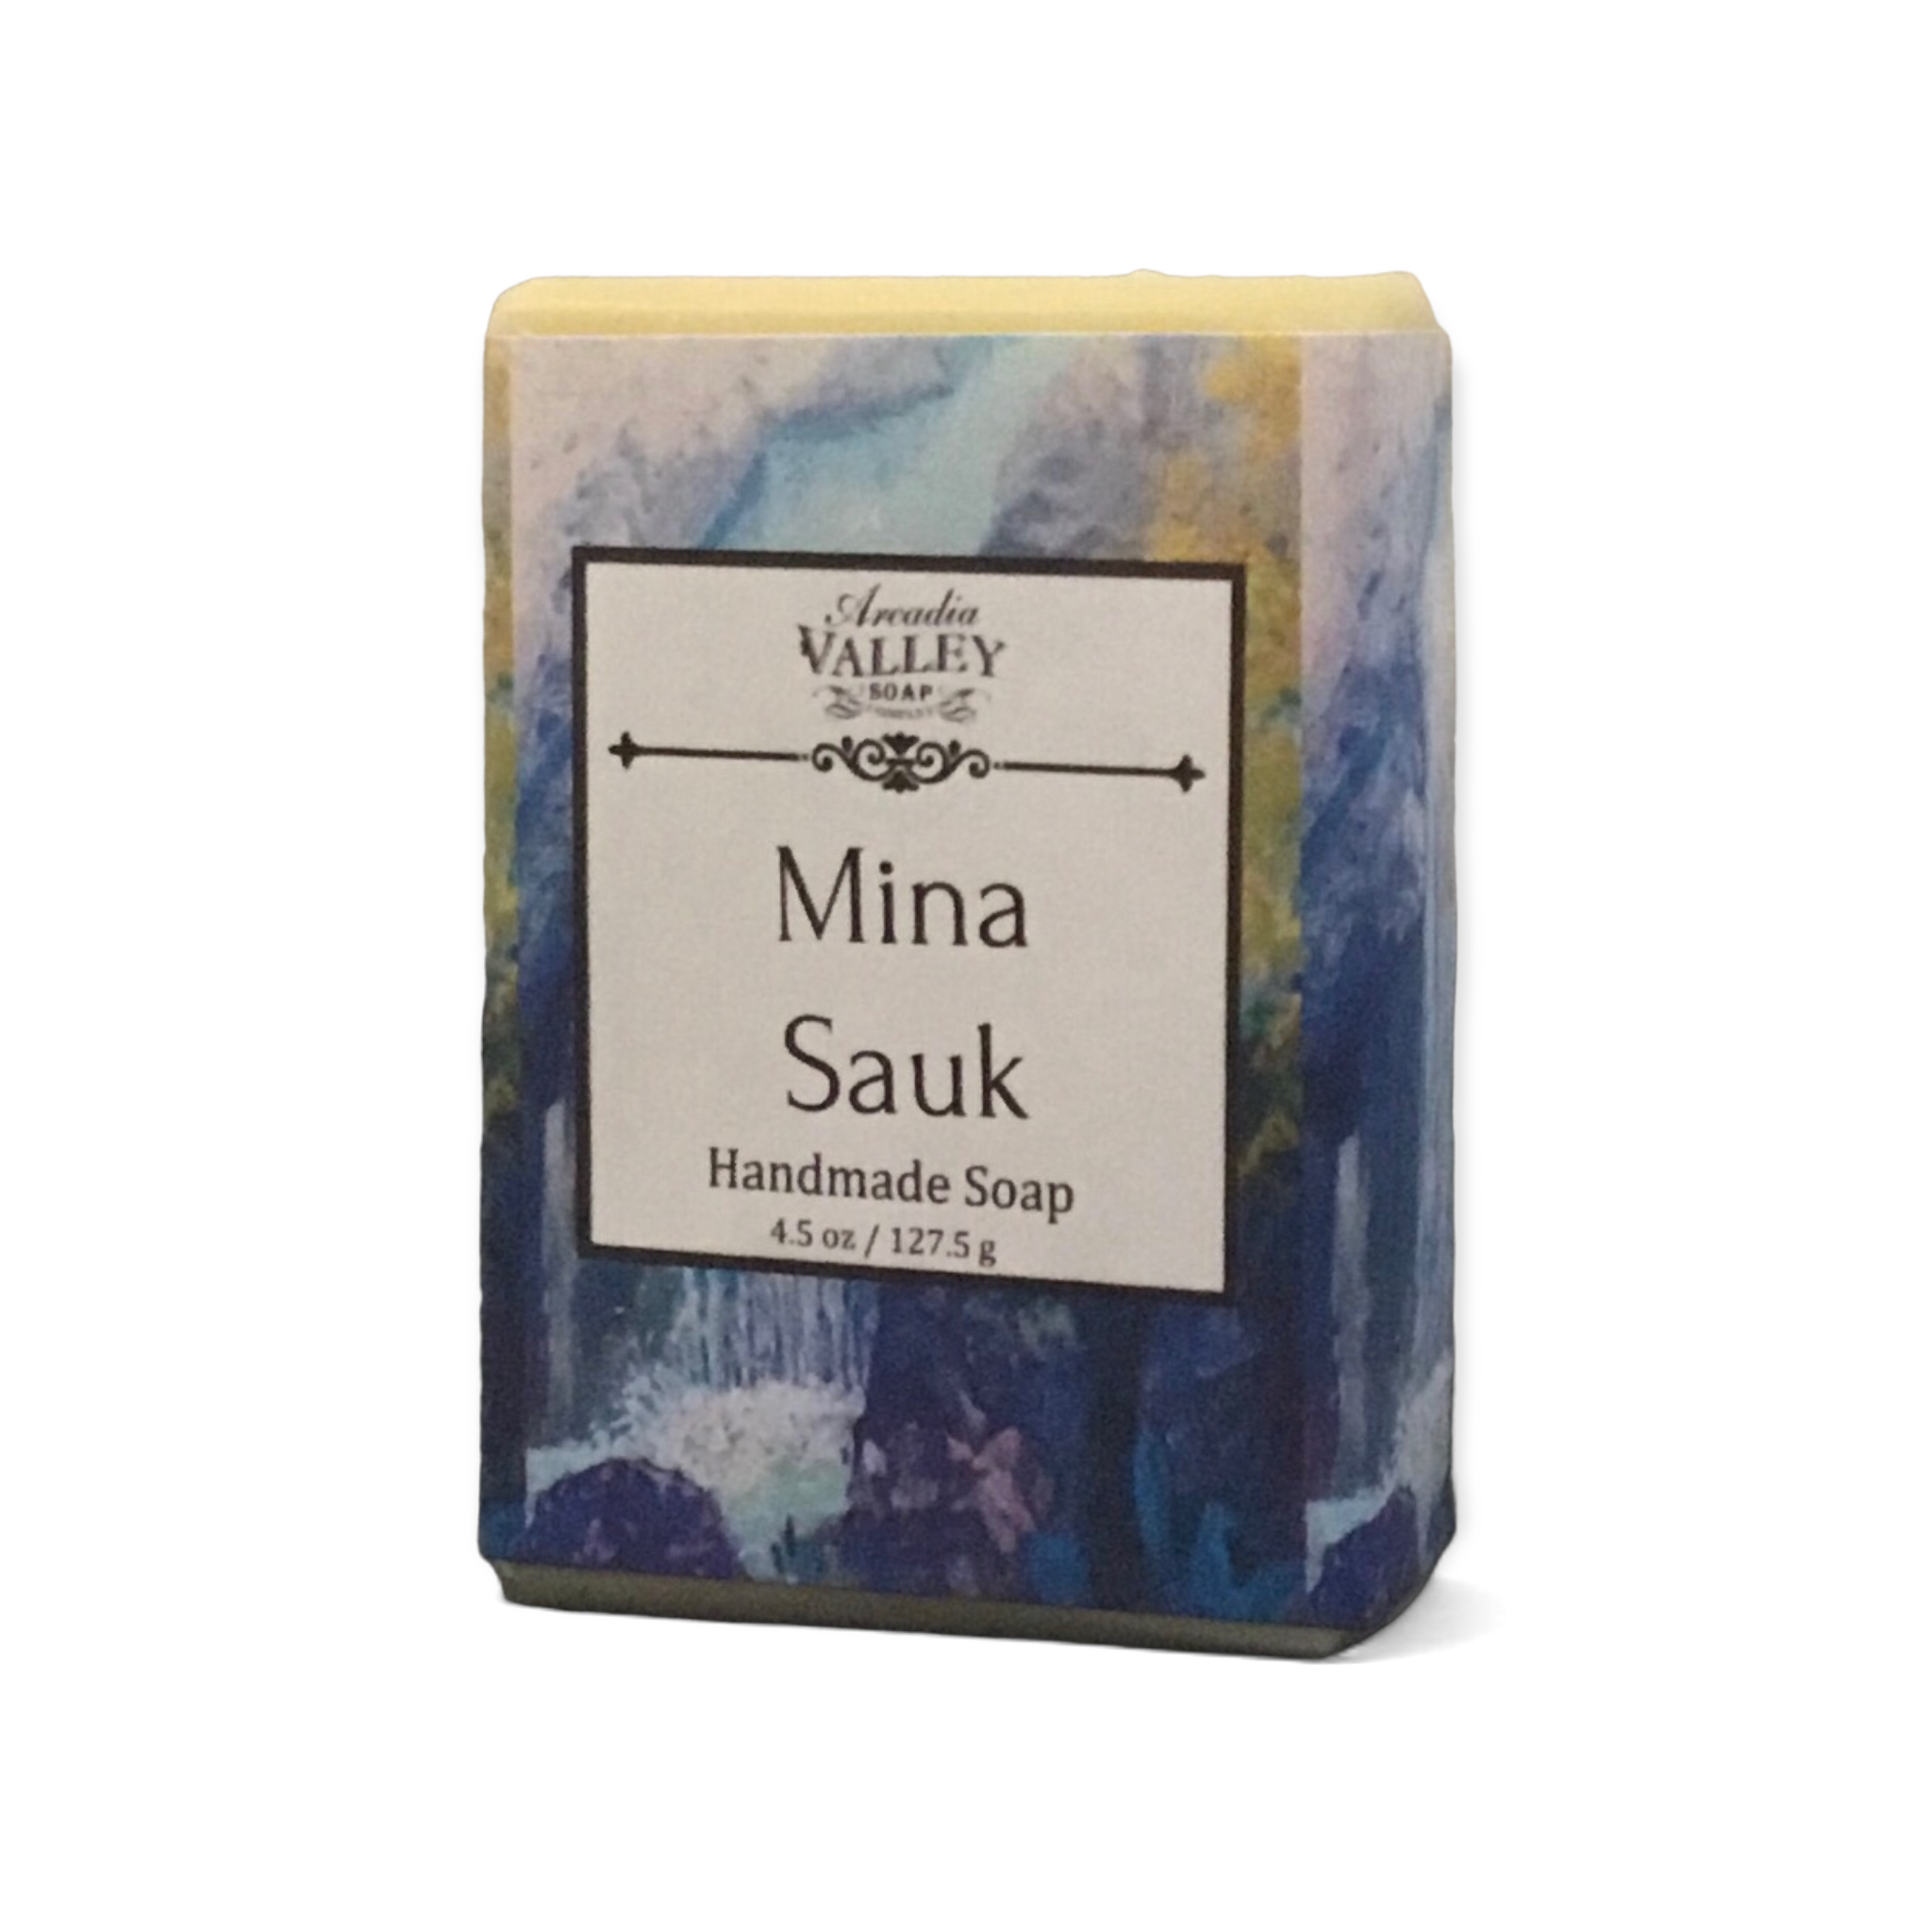 Mina Sauk Handmade Soap